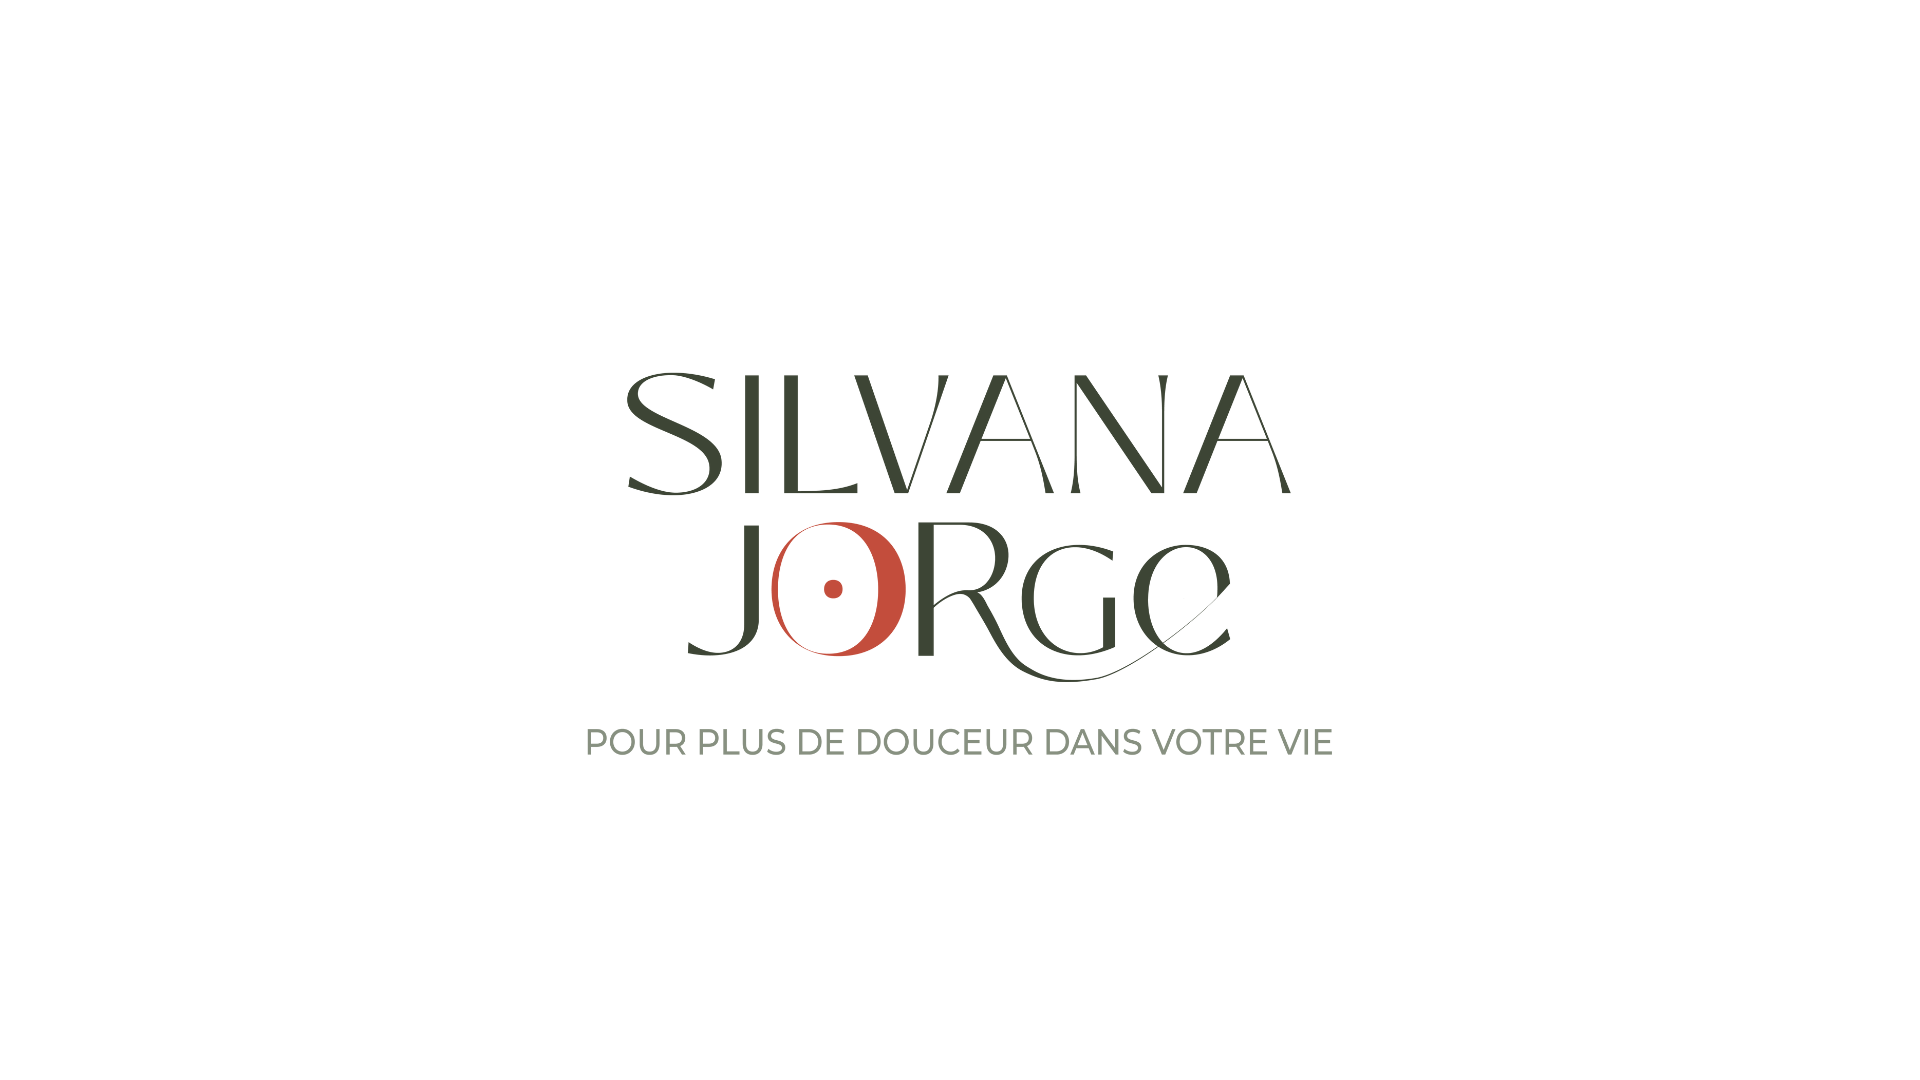 Déclinaison du logo silvana jorge par l'agence de branding agence 455